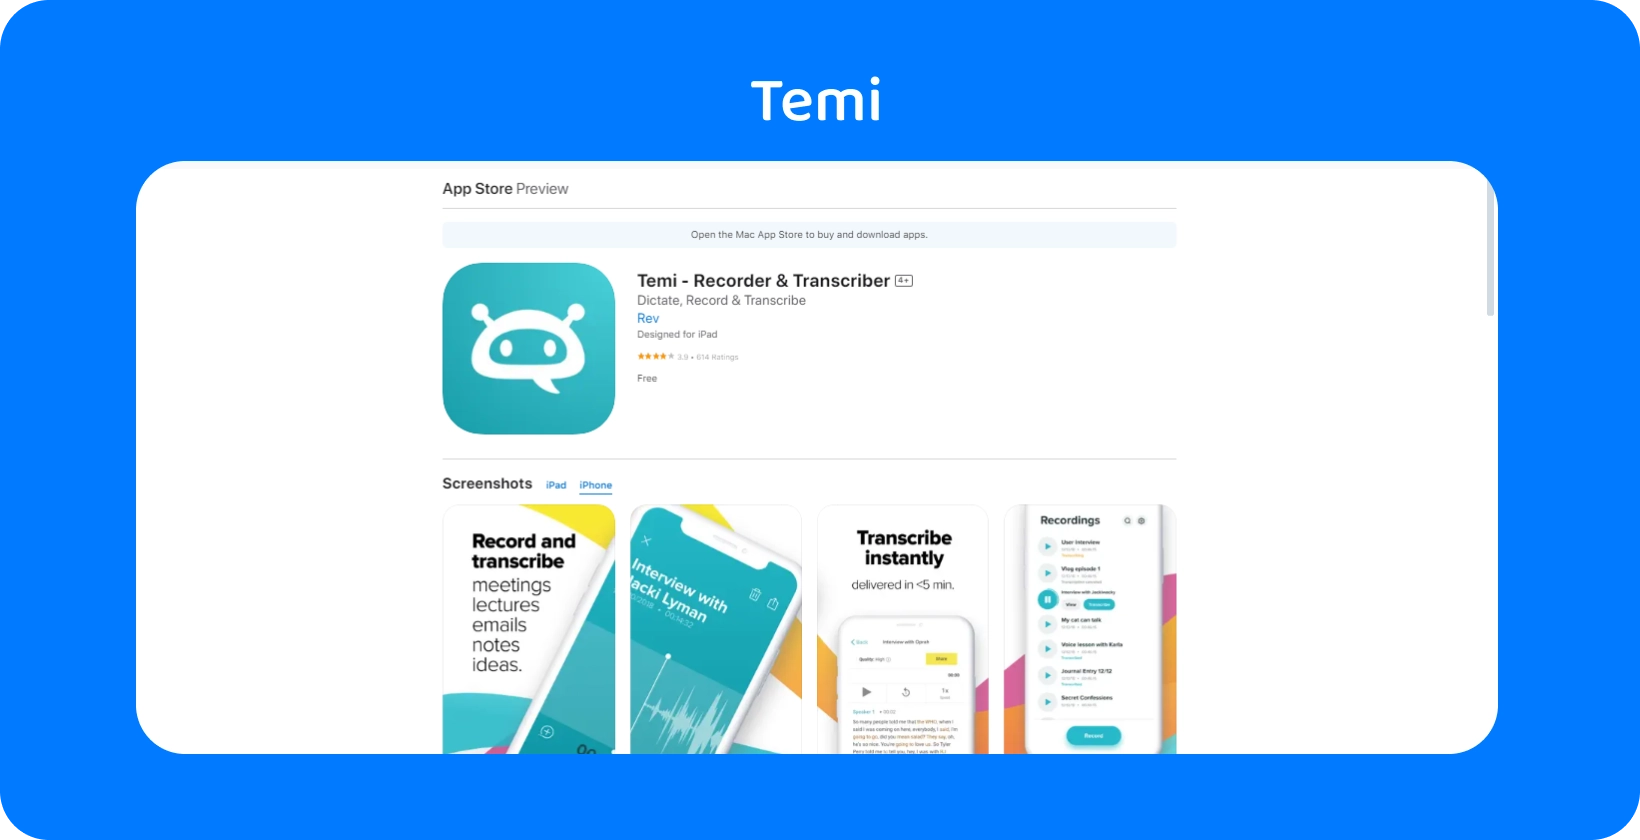 Скриншот Temi App Store листинга, подчеркивающий его функции быстрой записи и мгновенной расшифровки.